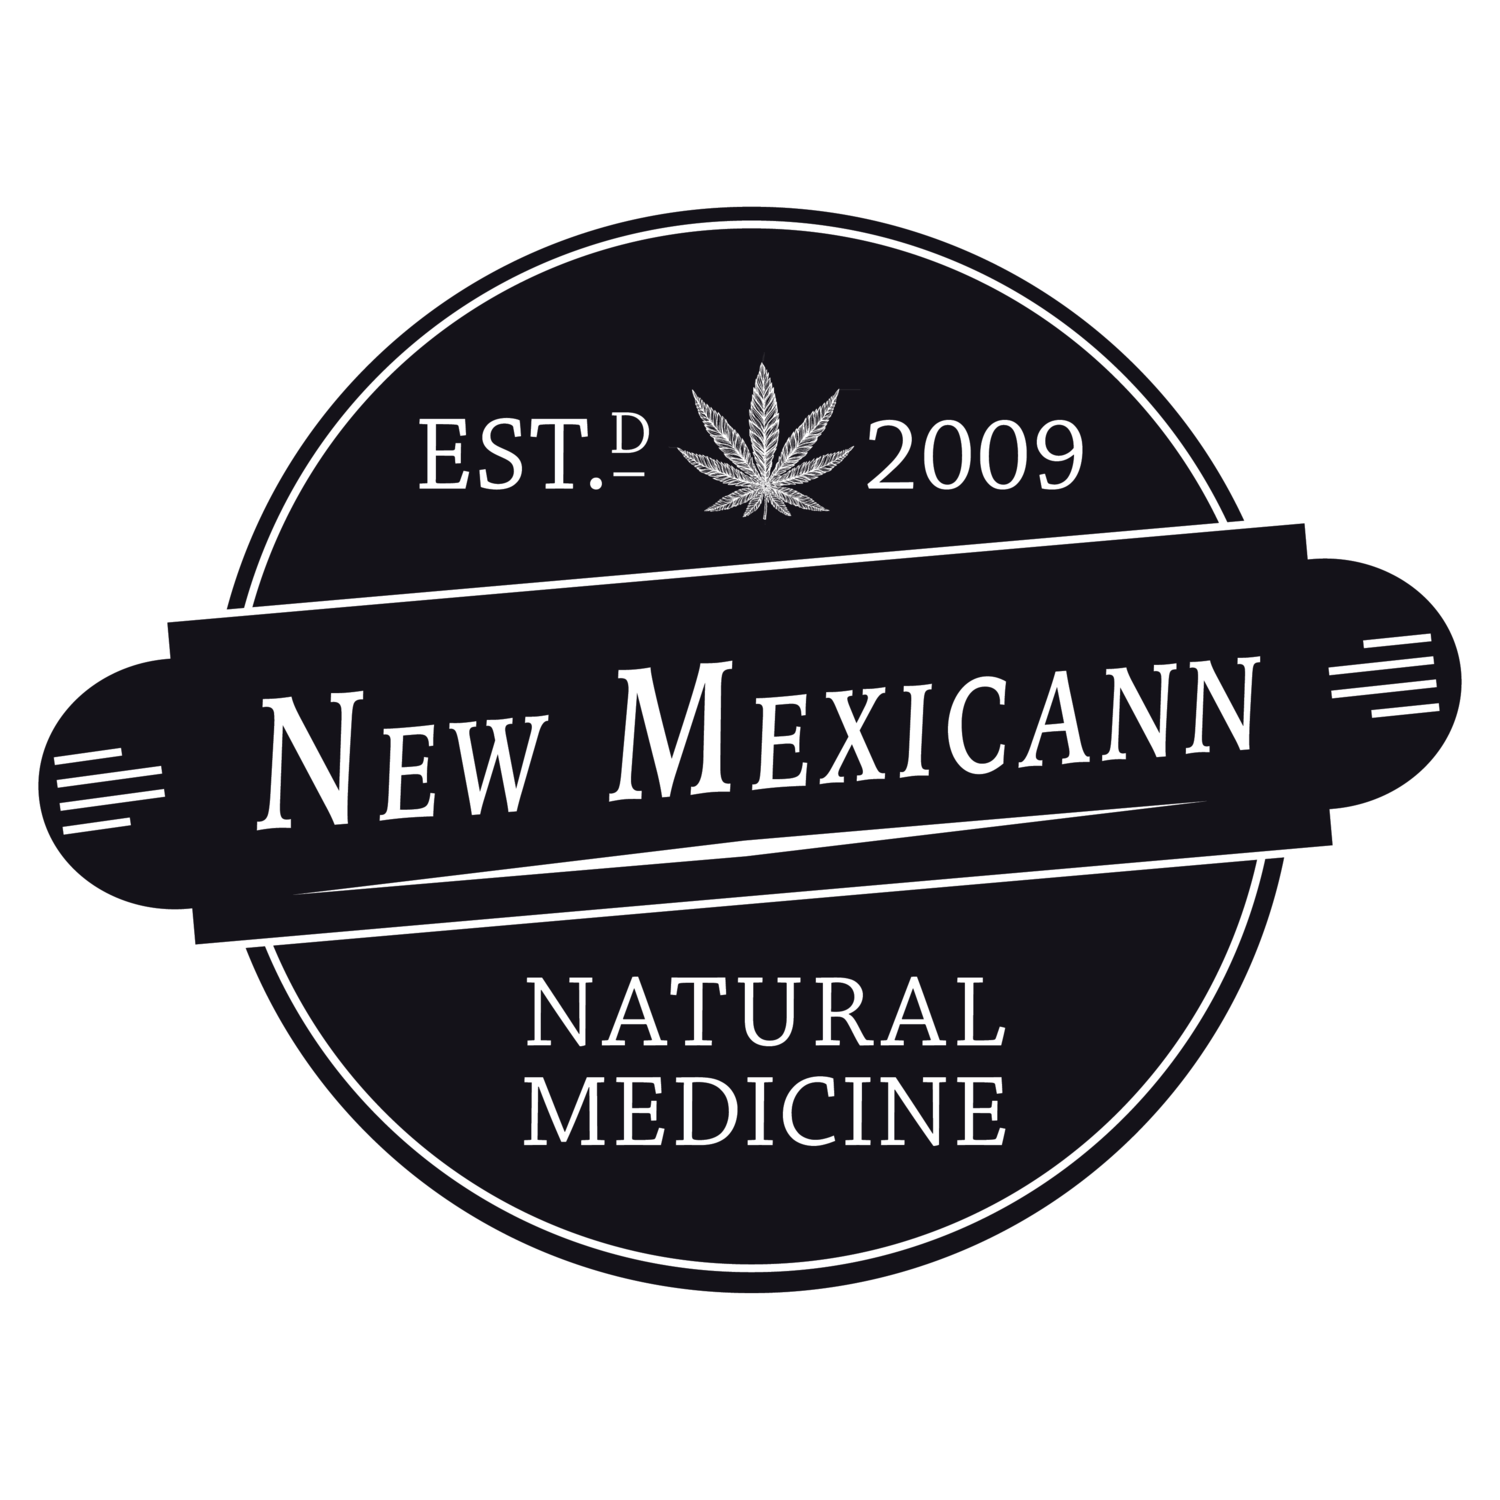 New Mexicann Natural Medicine - Las Vegas - Medical Marijuana Doctors - Cannabizme.com